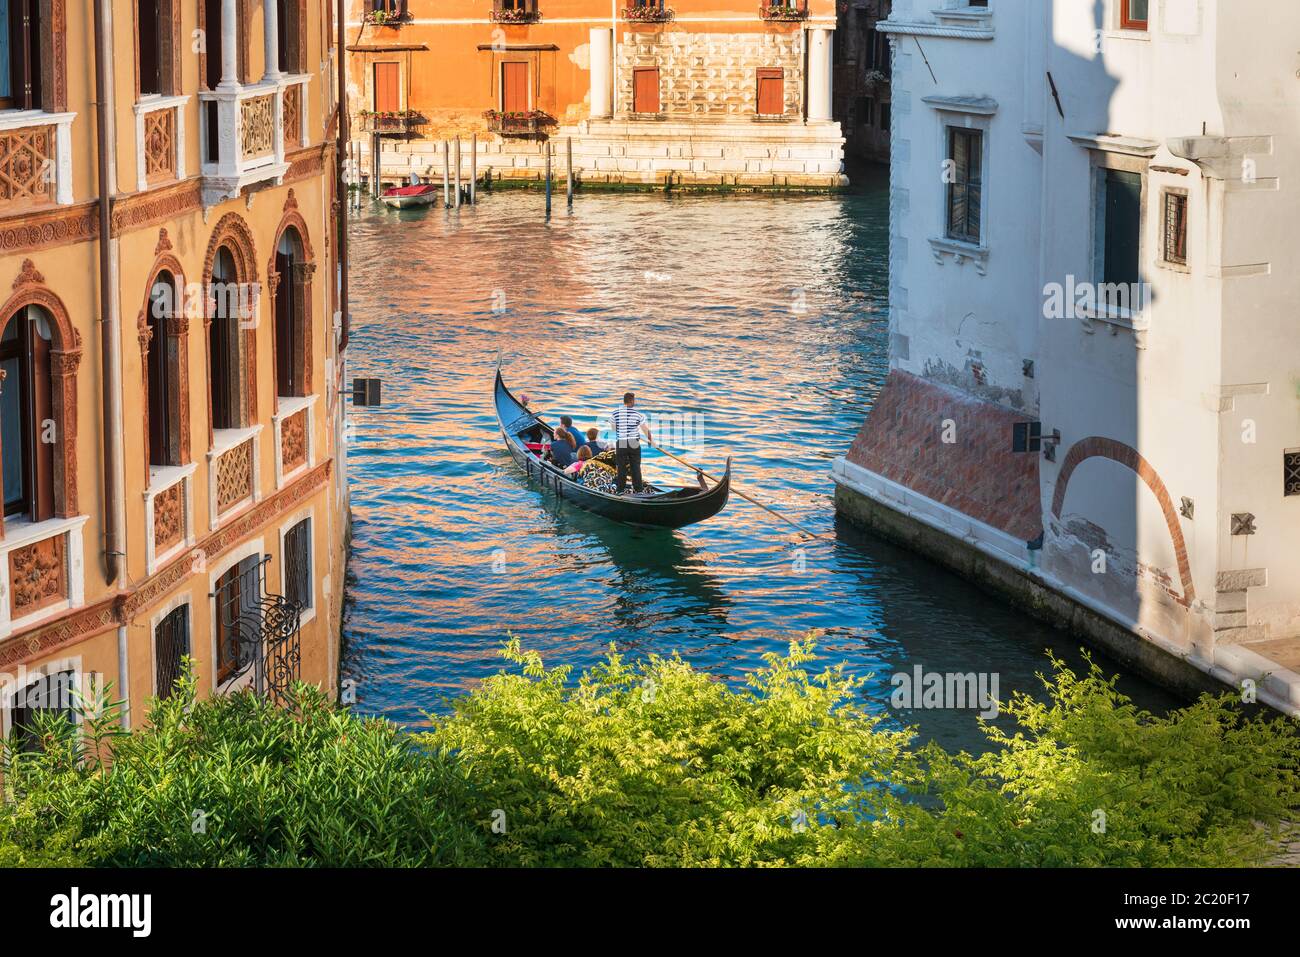 Touristes prenant une gondole sur le Grand Canal Venise, Italie Banque D'Images